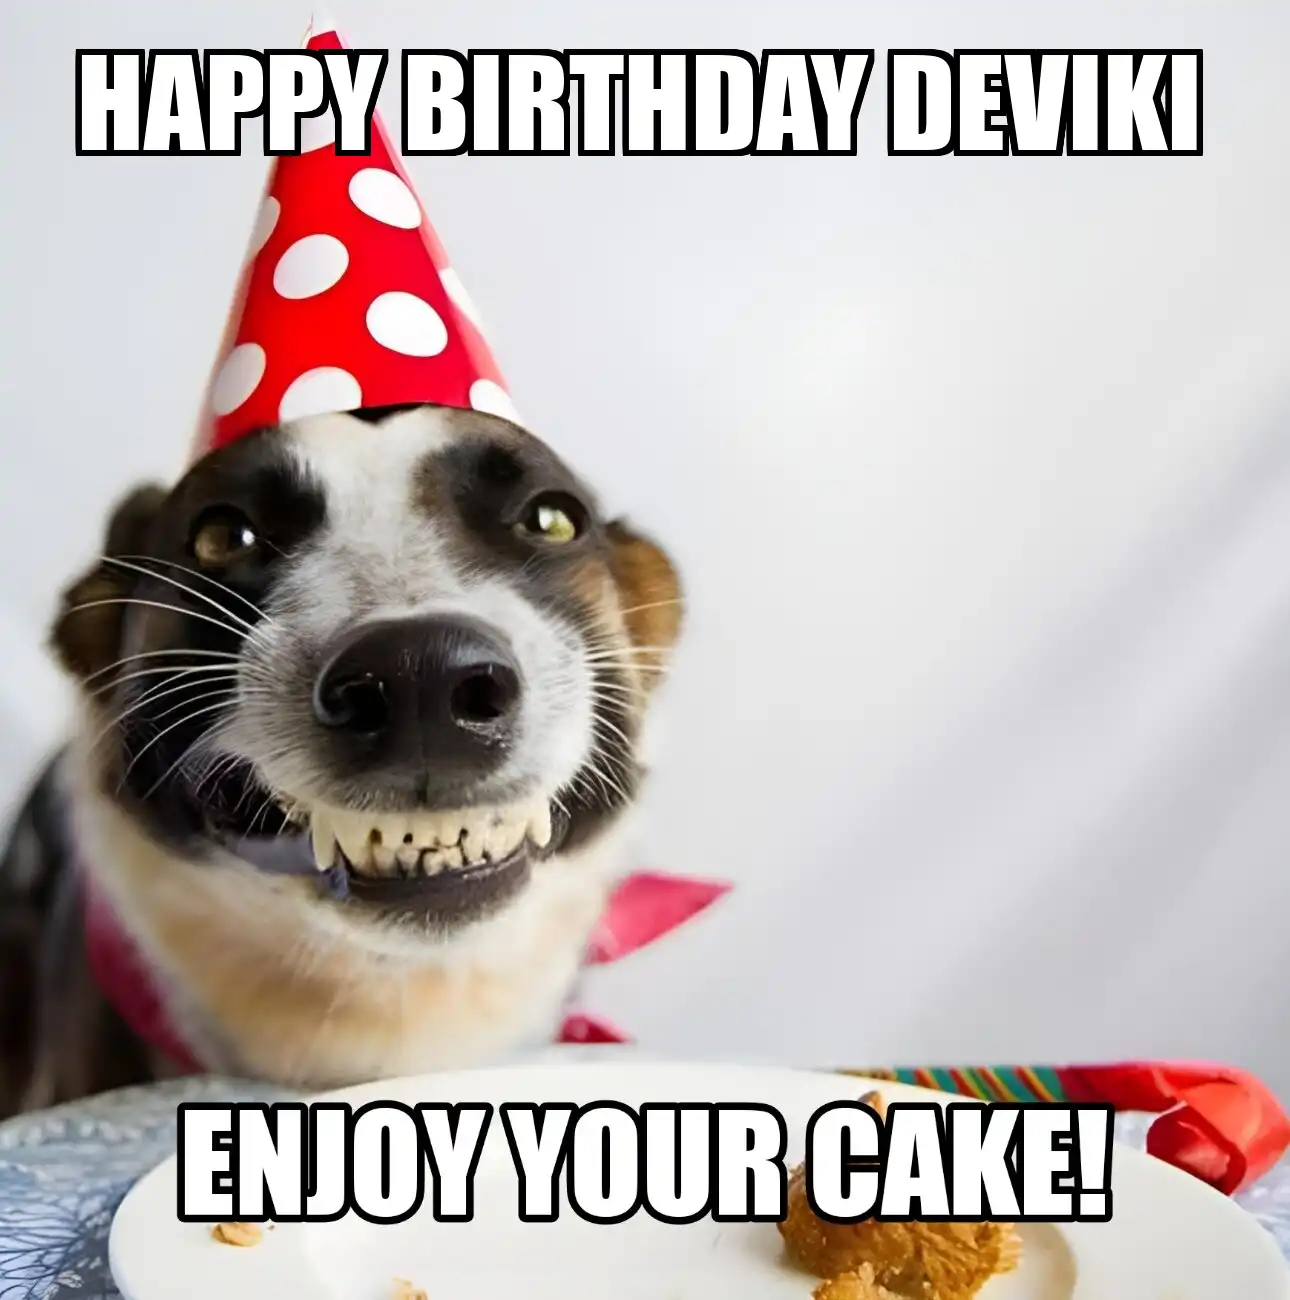 Happy Birthday Deviki Enjoy Your Cake Dog Meme